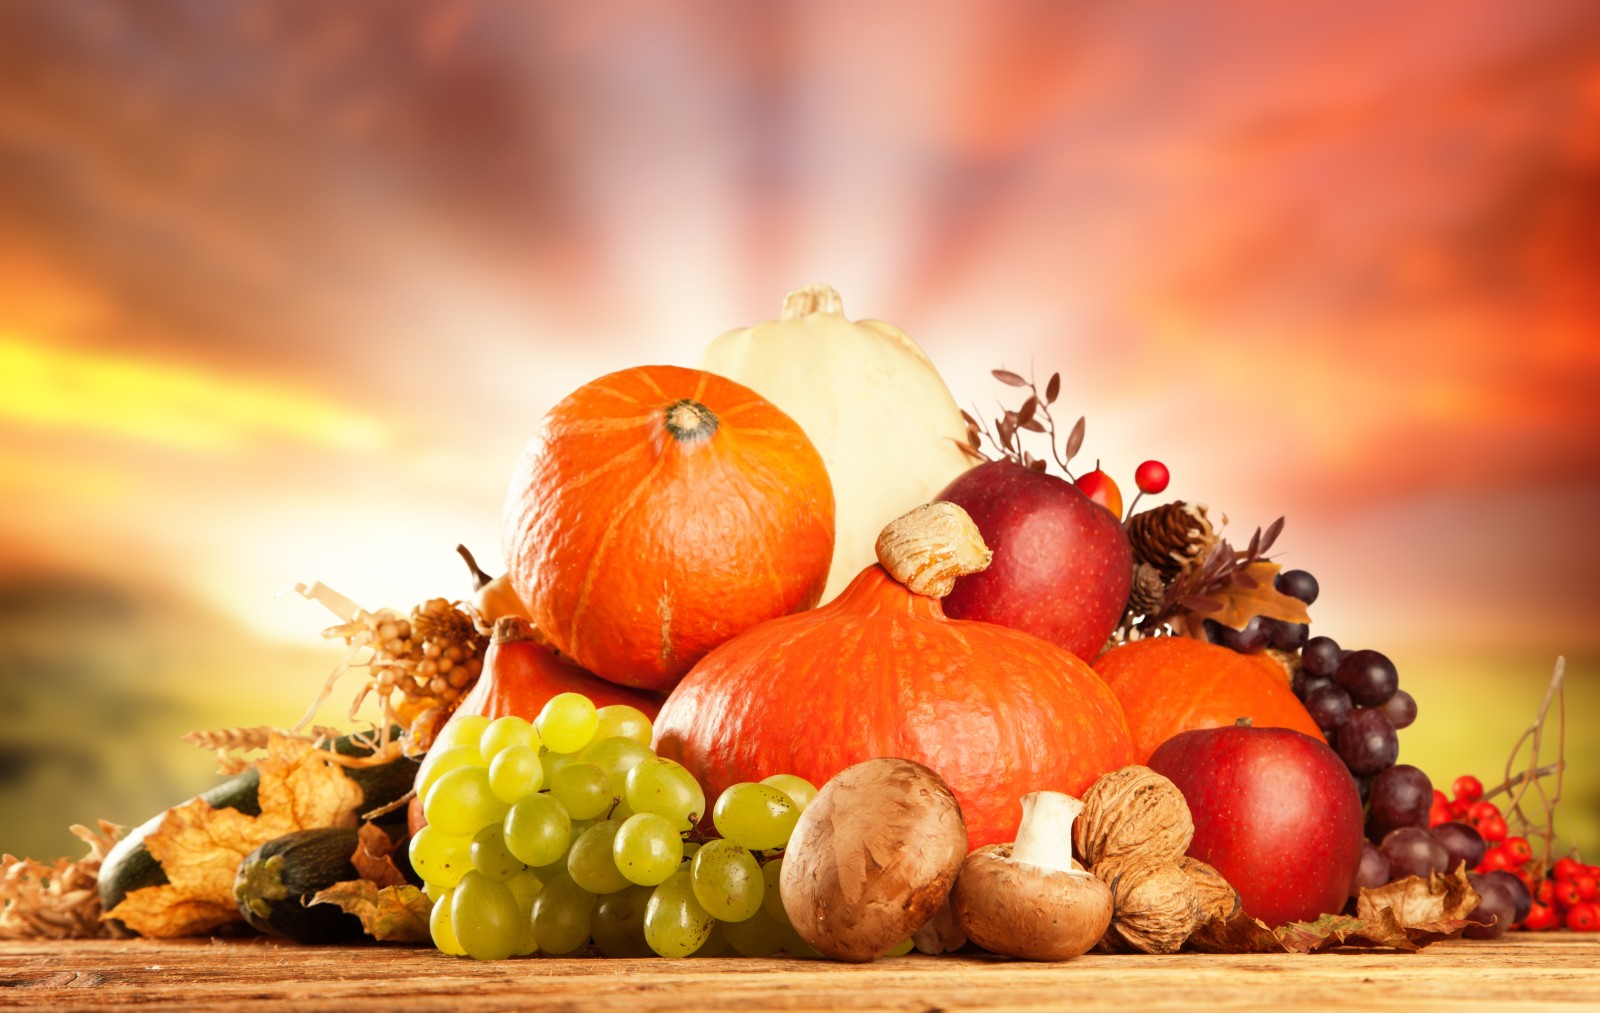 きのこ, 野菜, かぼちゃ, 林檎, フルーツ, ナッツ, ぶどう, 乾燥した葉